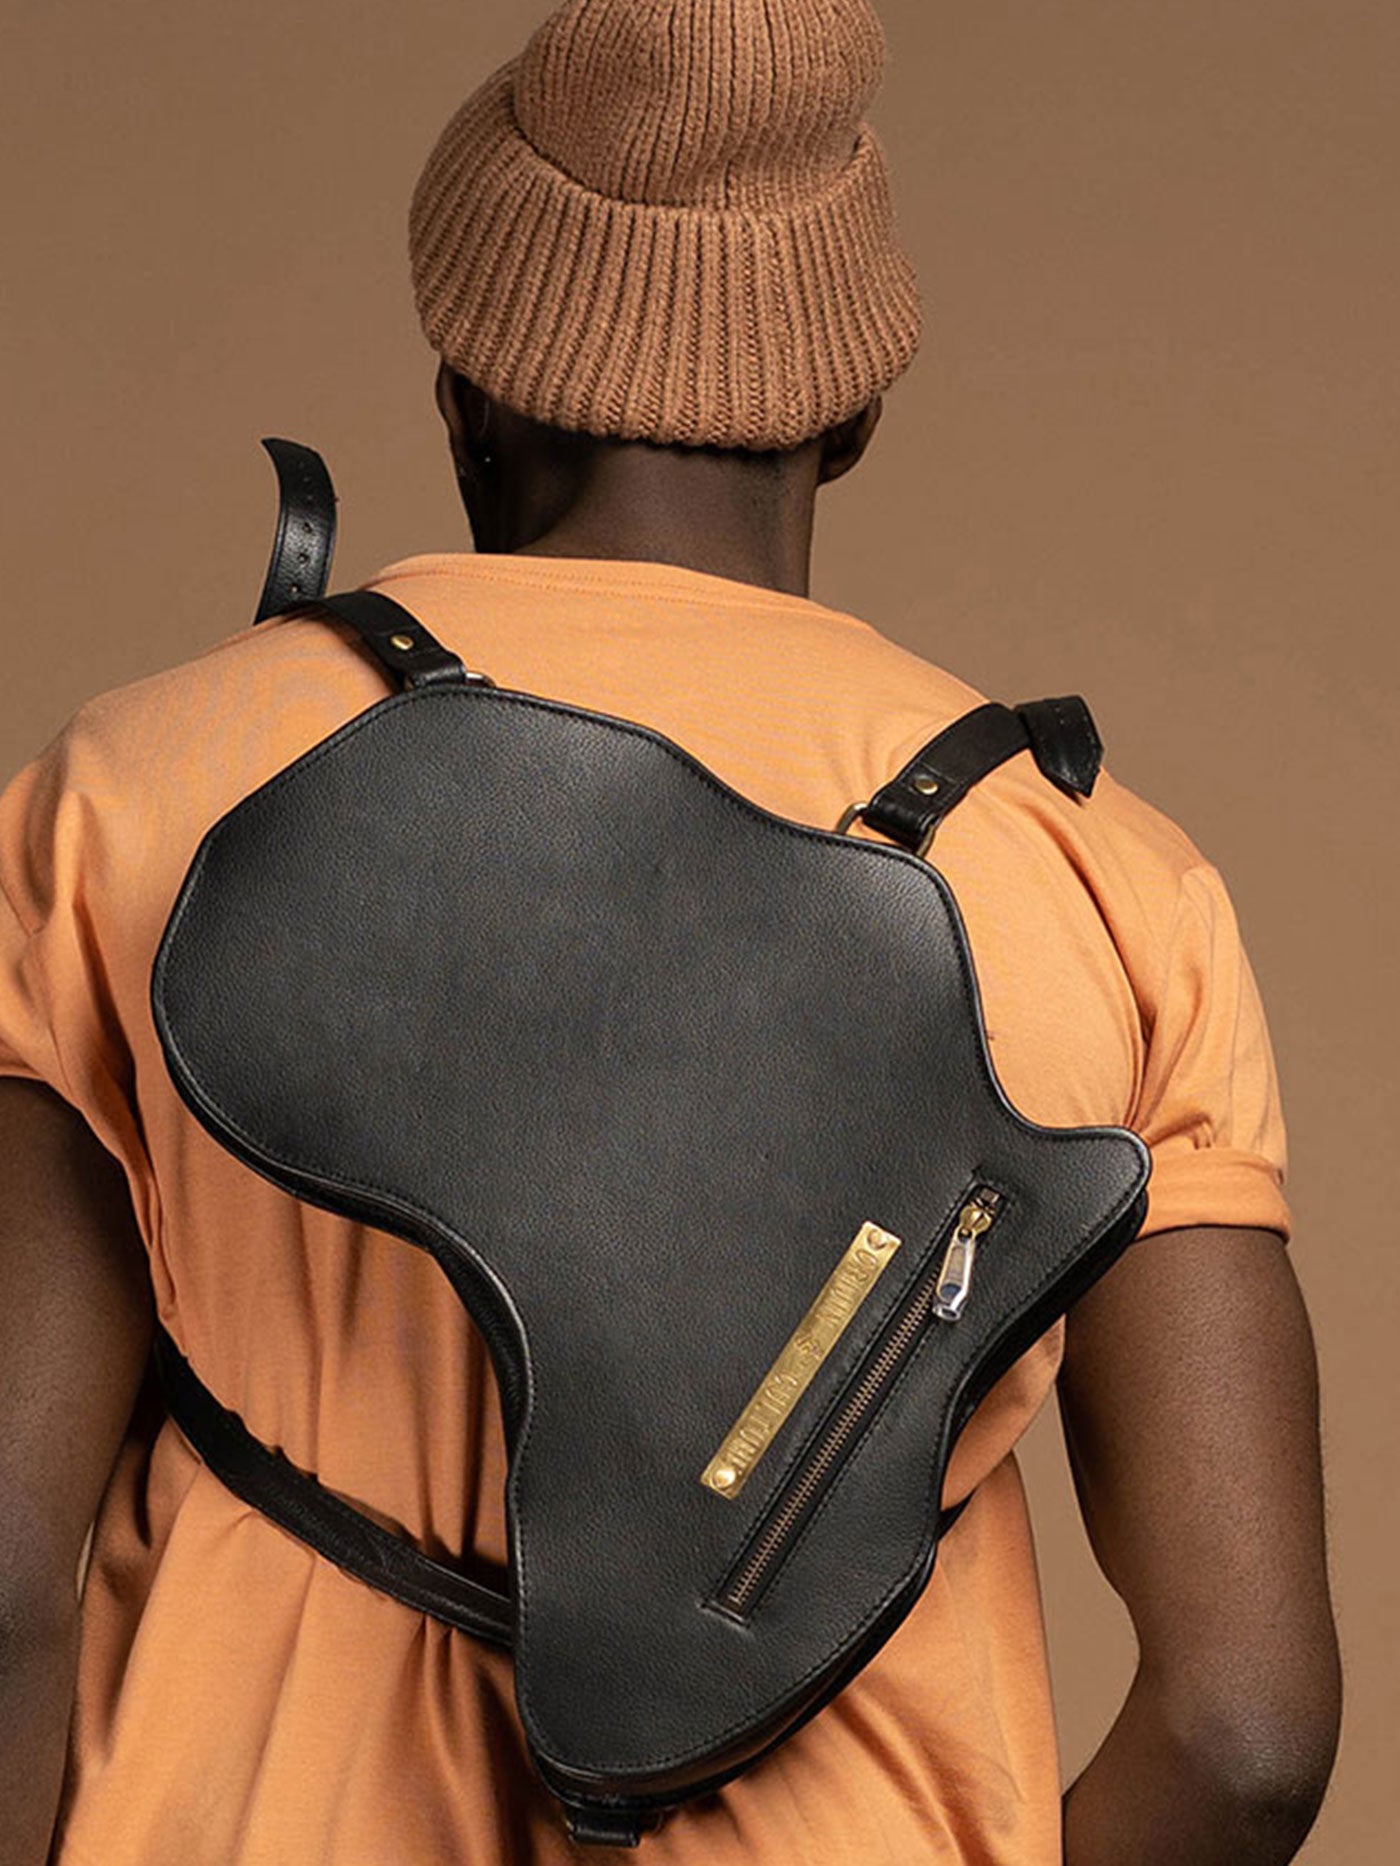 Africa shaped Bag / Backpack- Black Leather (Large)